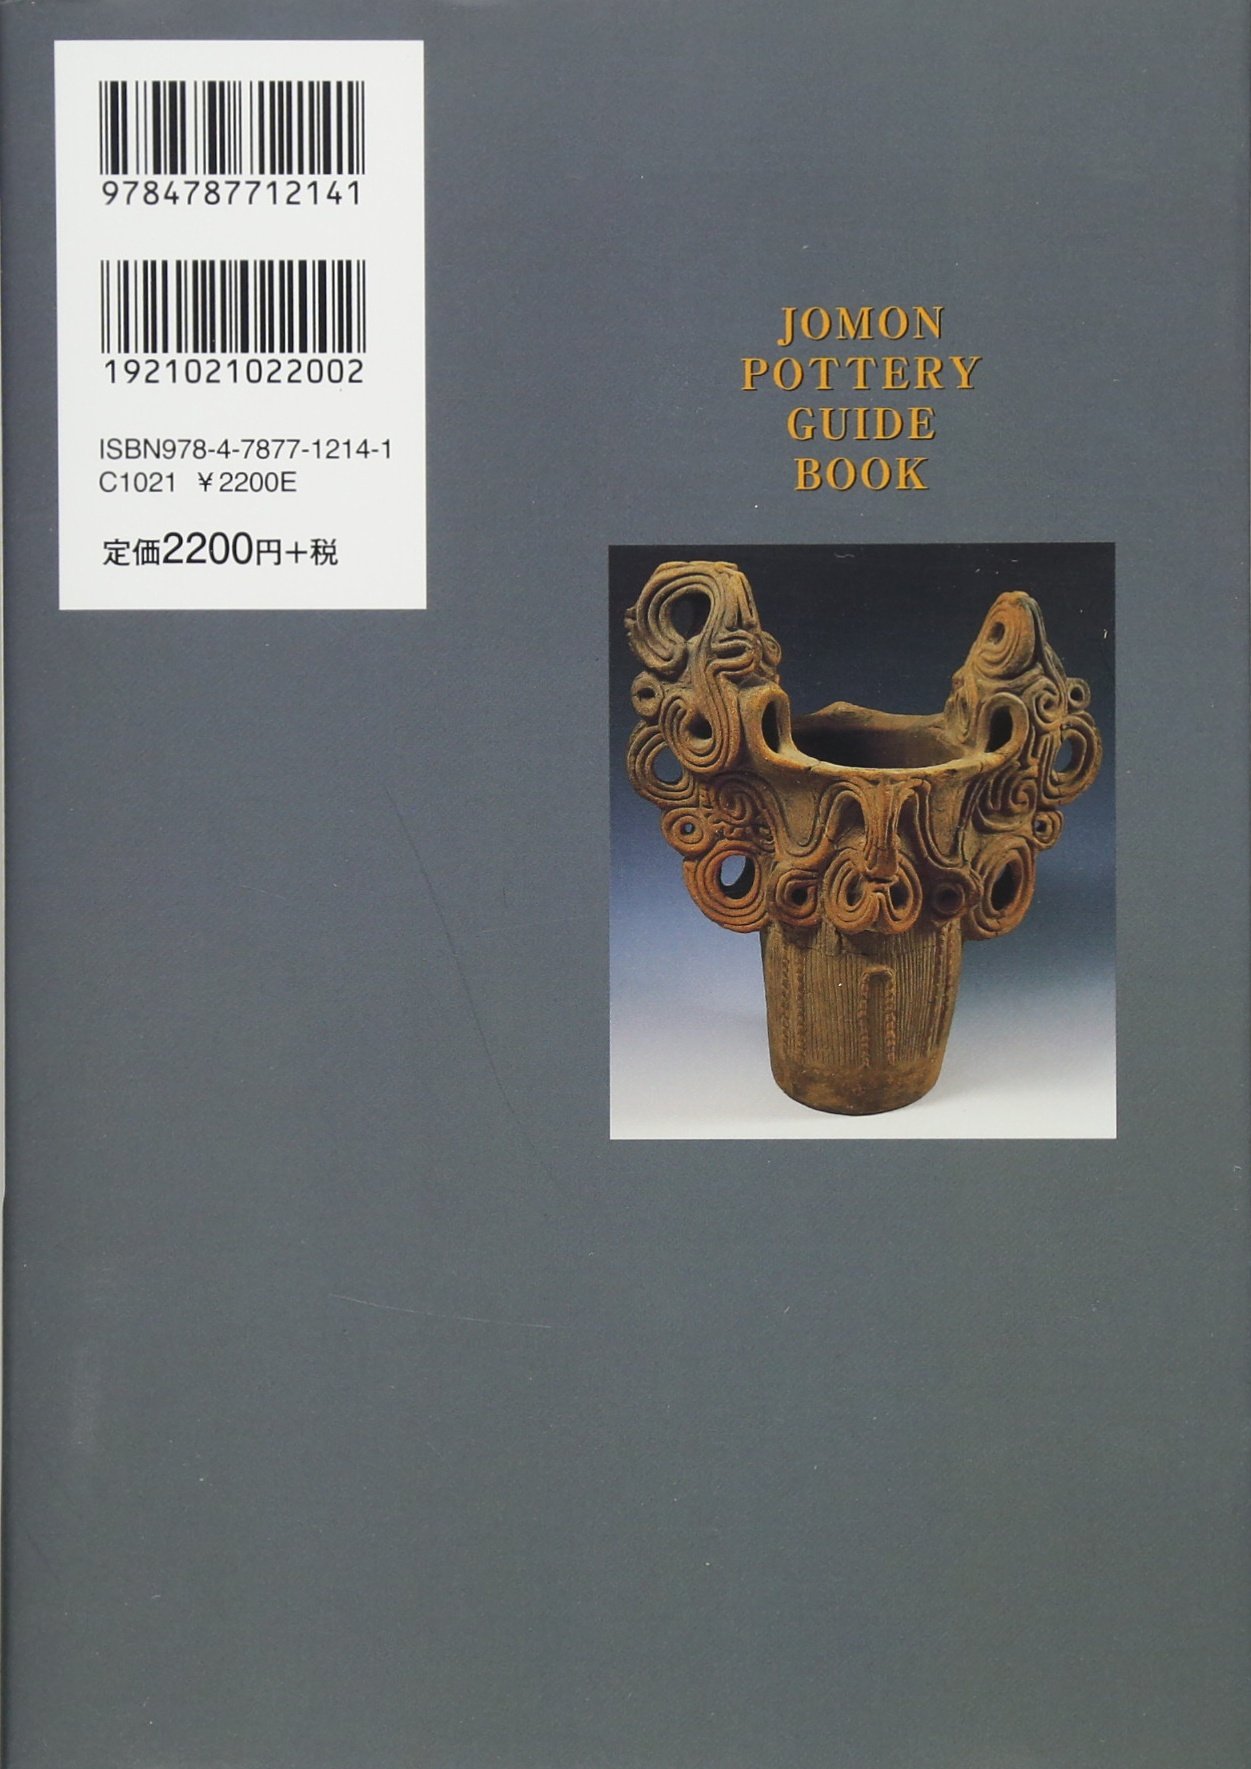 縄文土器ガイドブック―縄文土器の世界